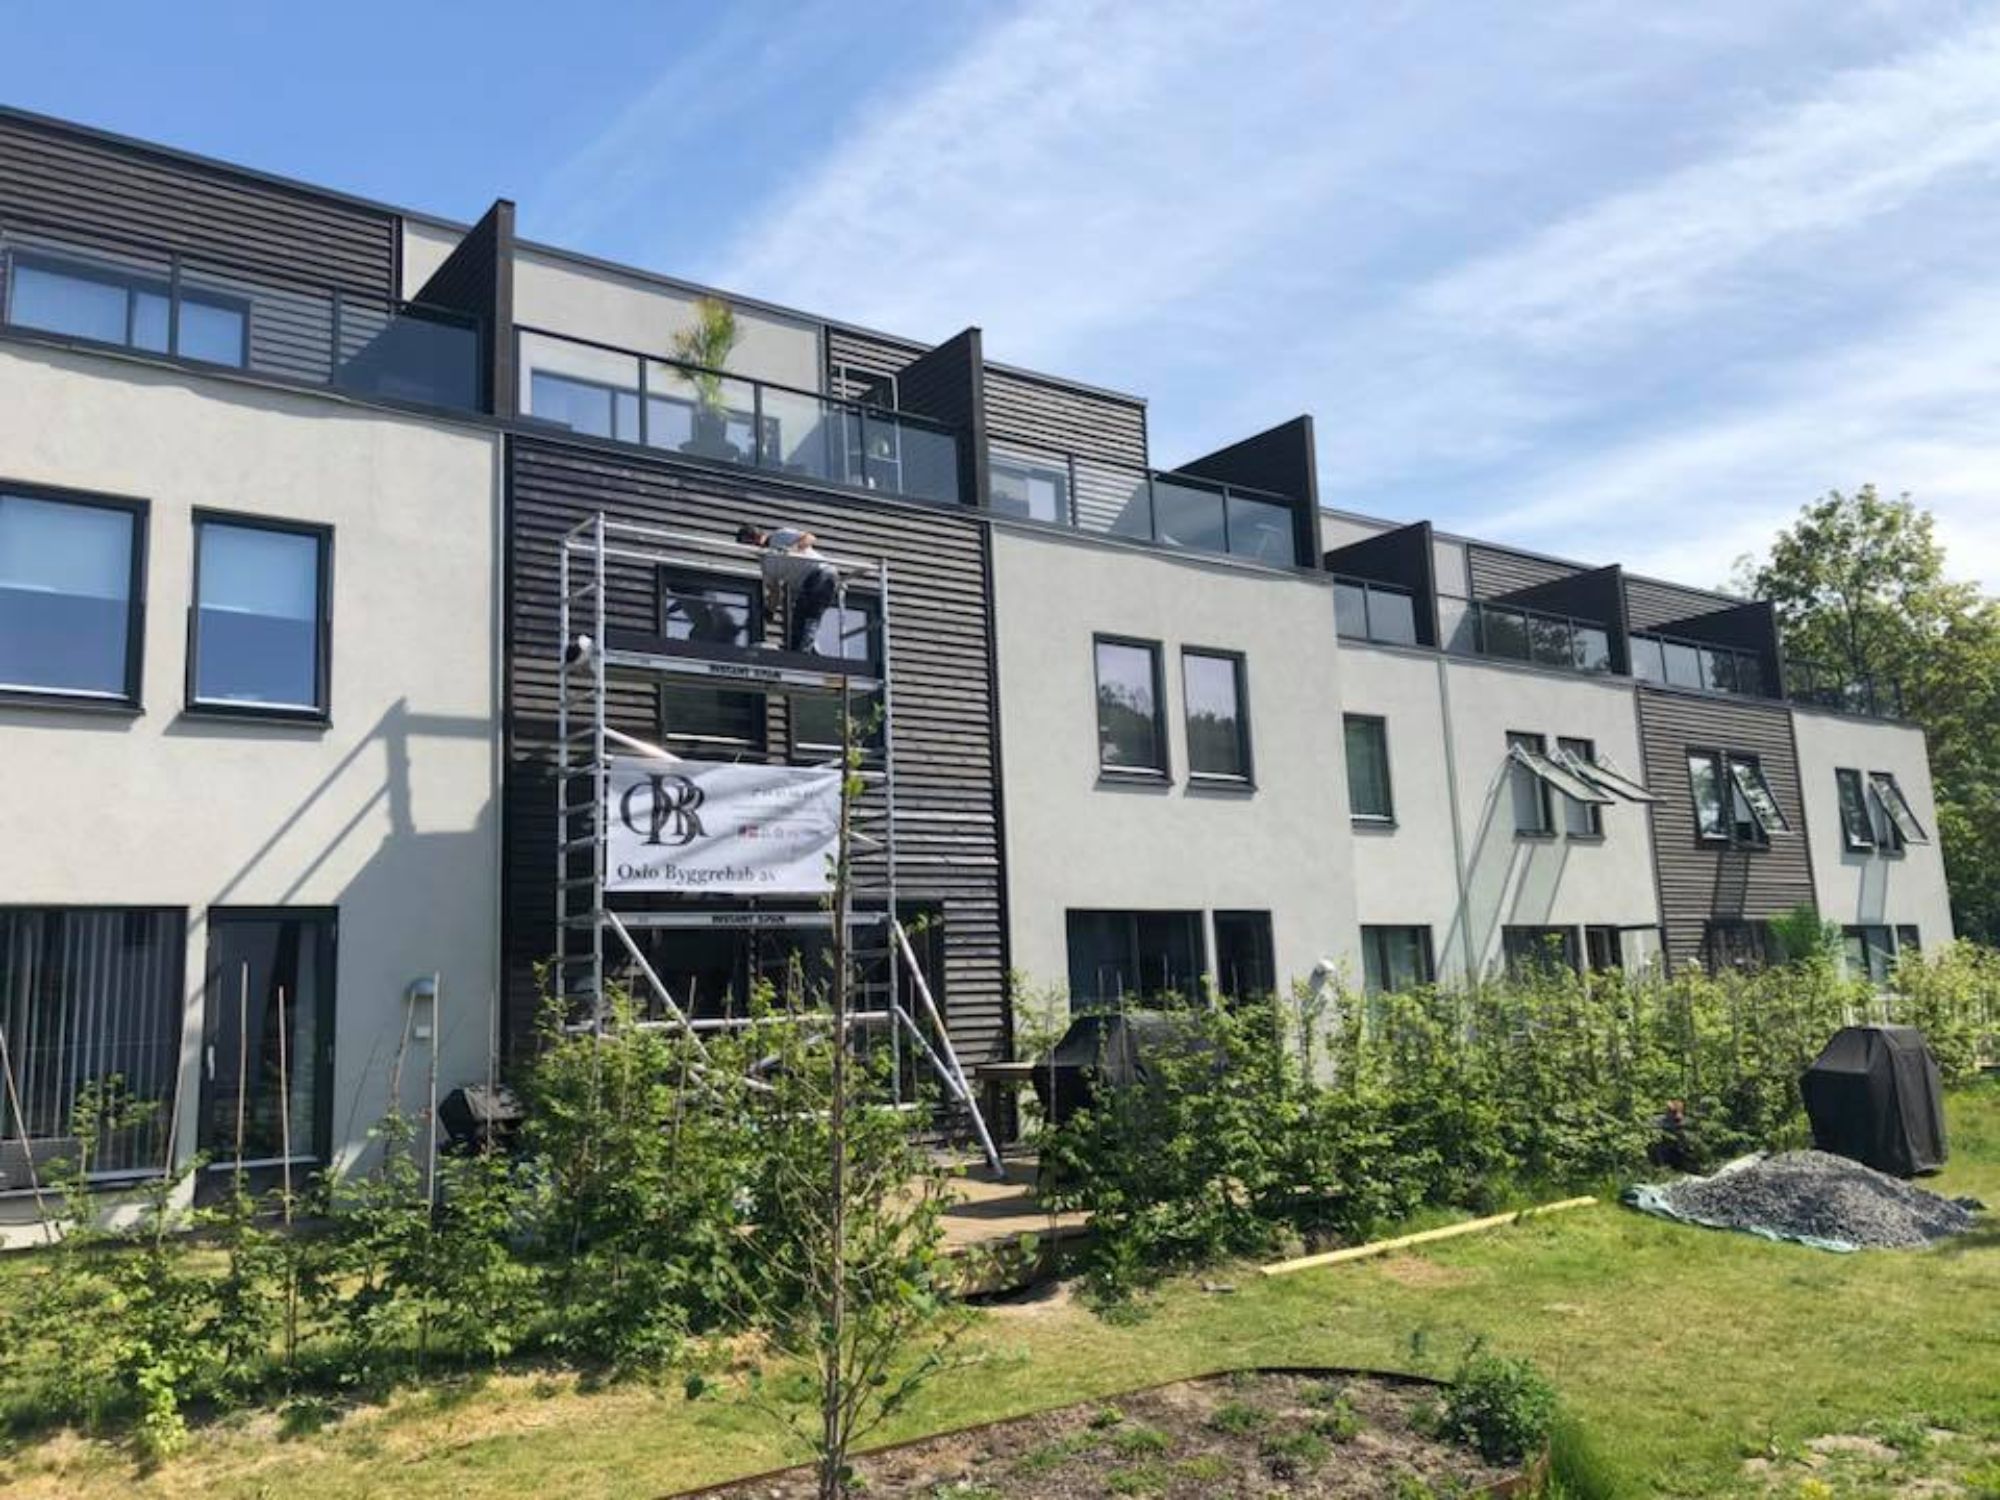 en Oslo Byggrehab AS ansatt som jobber med utsiden av et rekkehus på et stilas